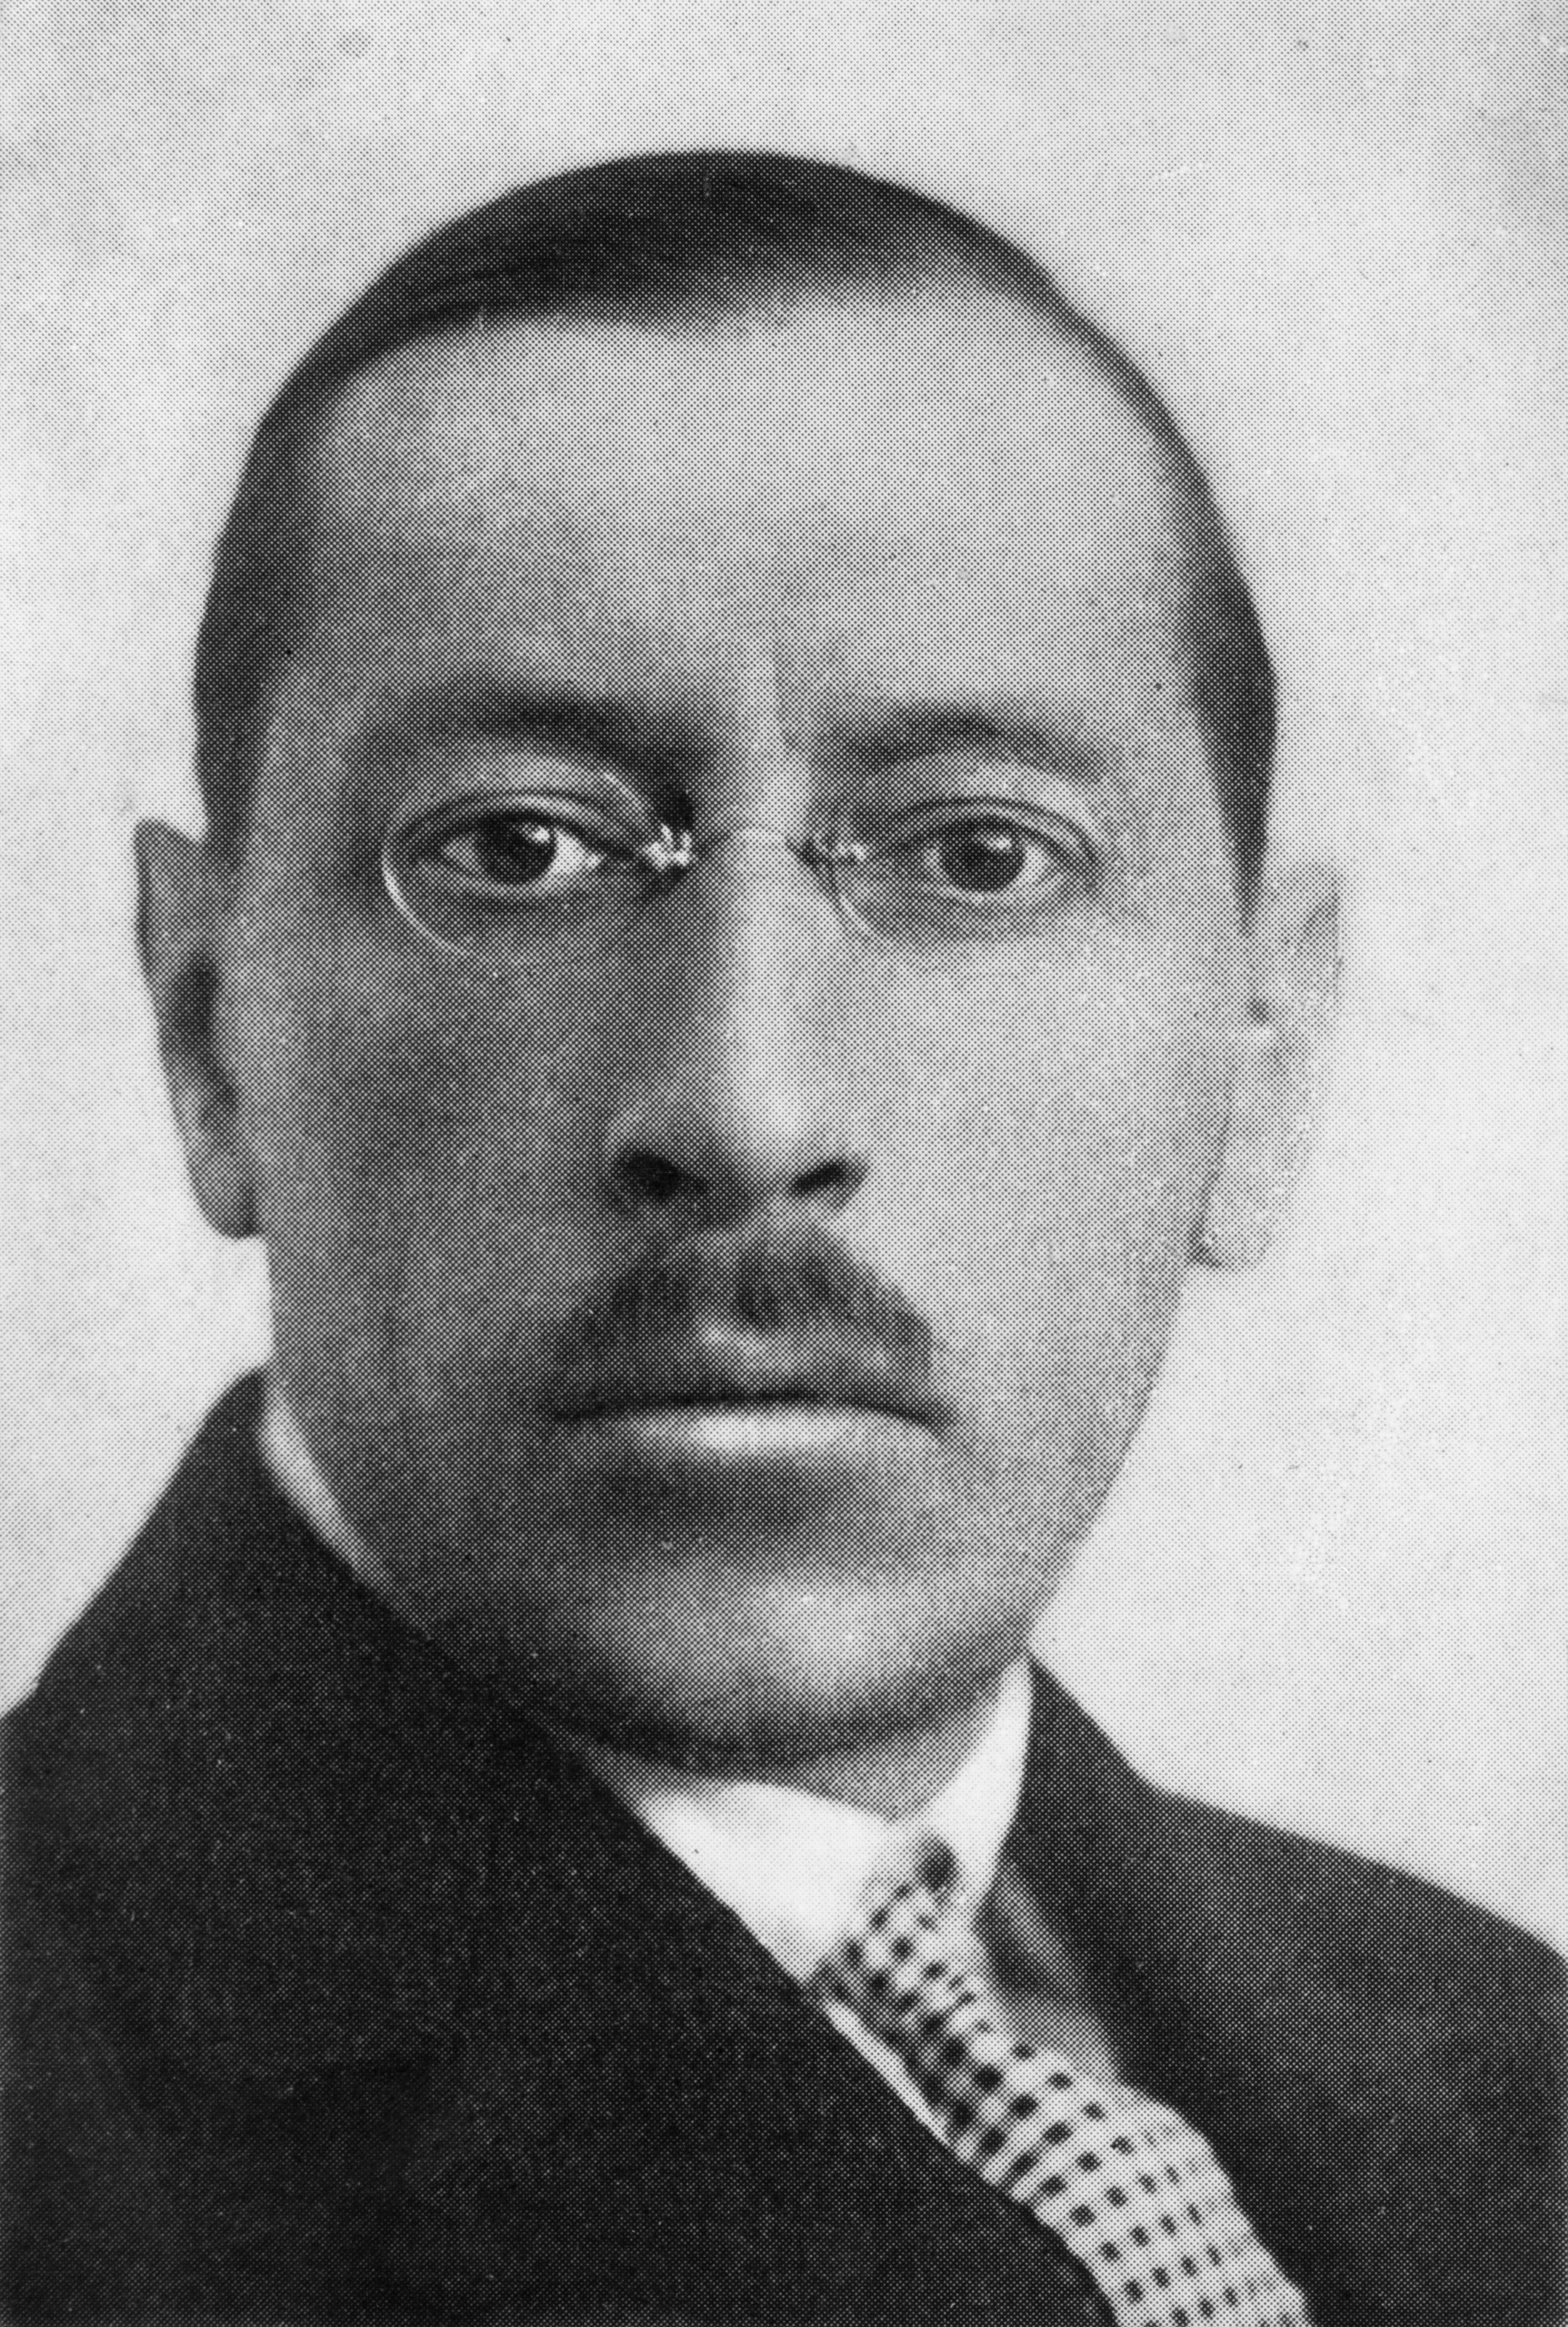 Un ritratto del compositore russo Igor Stravinsky del 1930